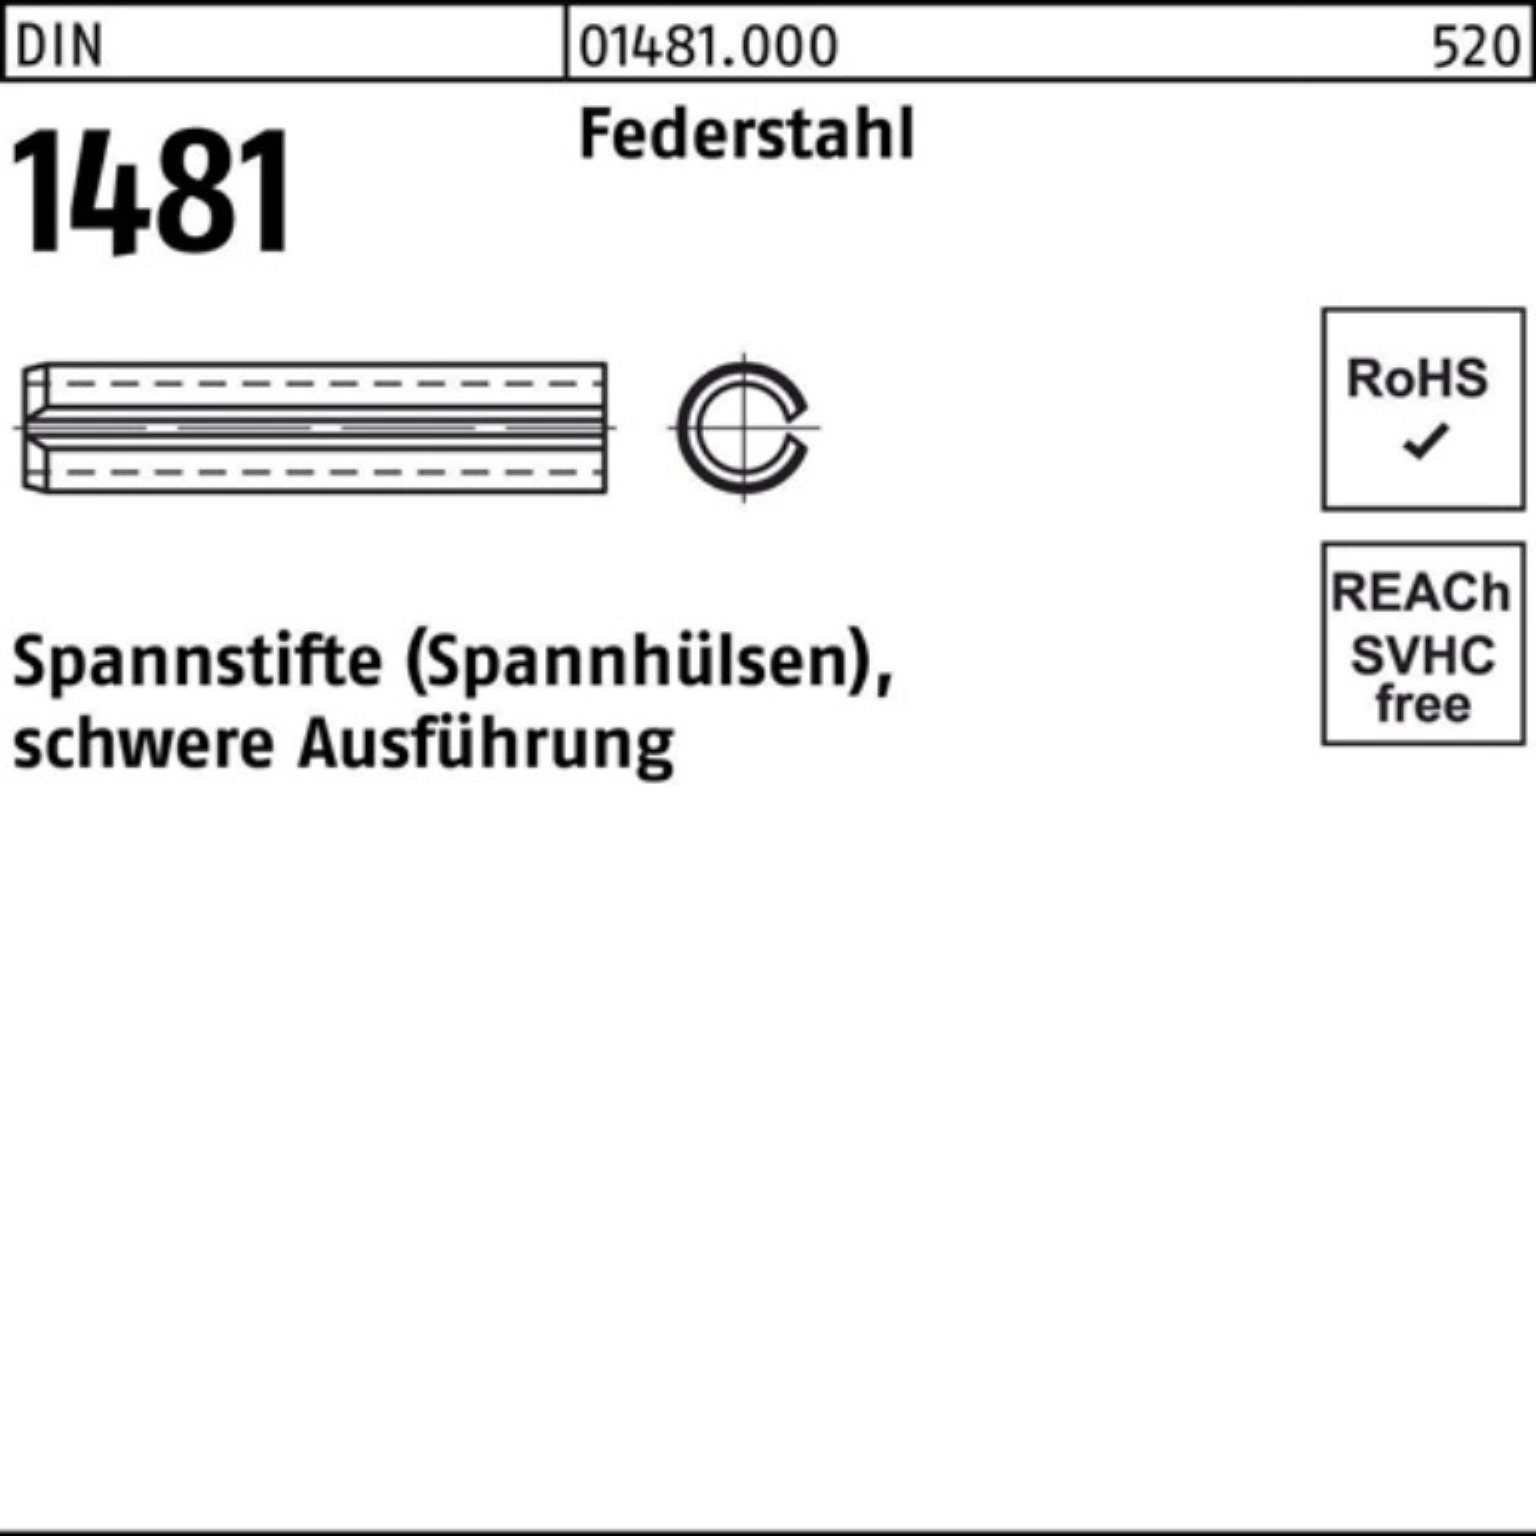 Reyher Spannstift 100er Pack Spannstift DIN 1481 5x 10 Federstahl schwere Ausführung 10